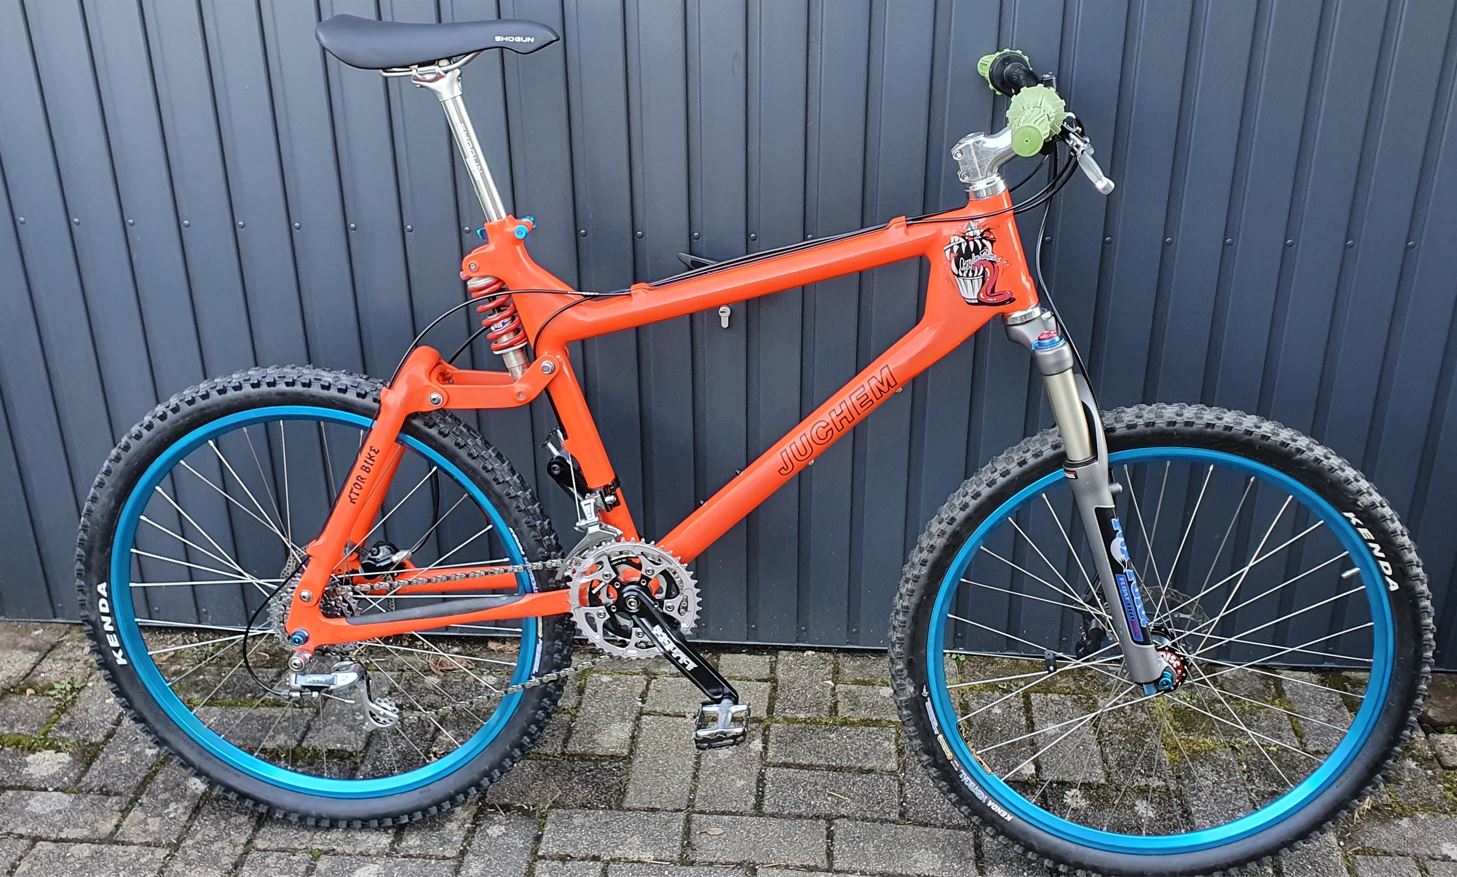 juchem-fr-bike-orange1.jpeg